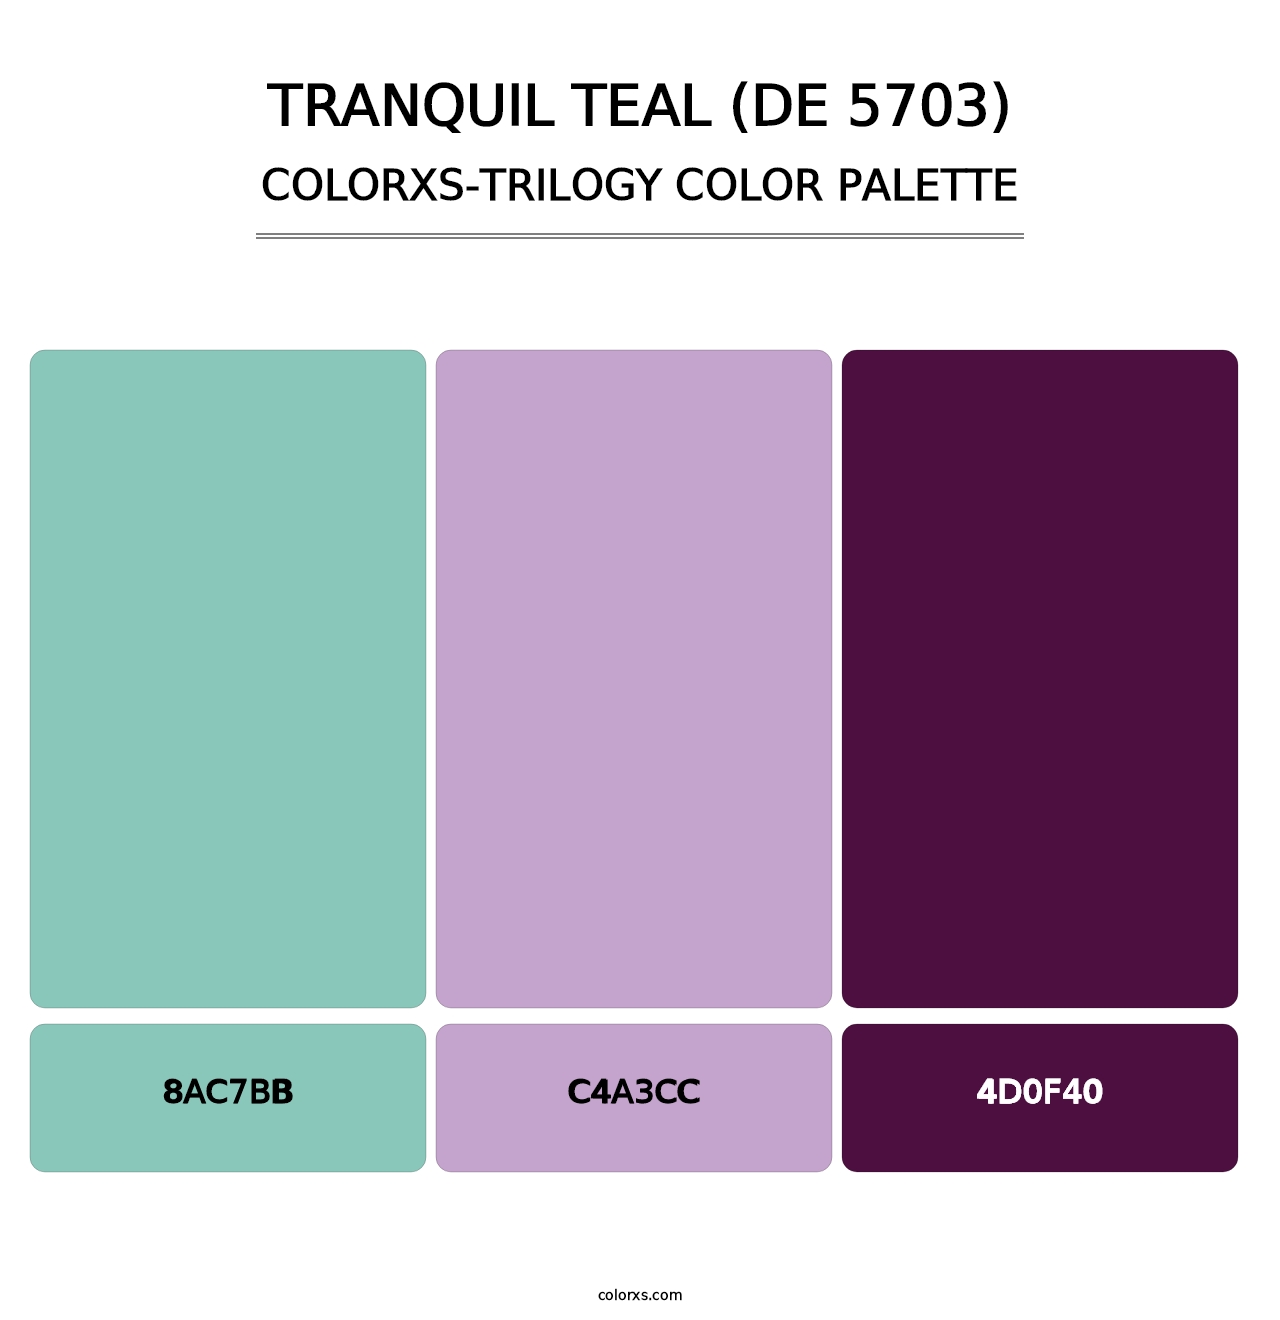 Tranquil Teal (DE 5703) - Colorxs Trilogy Palette